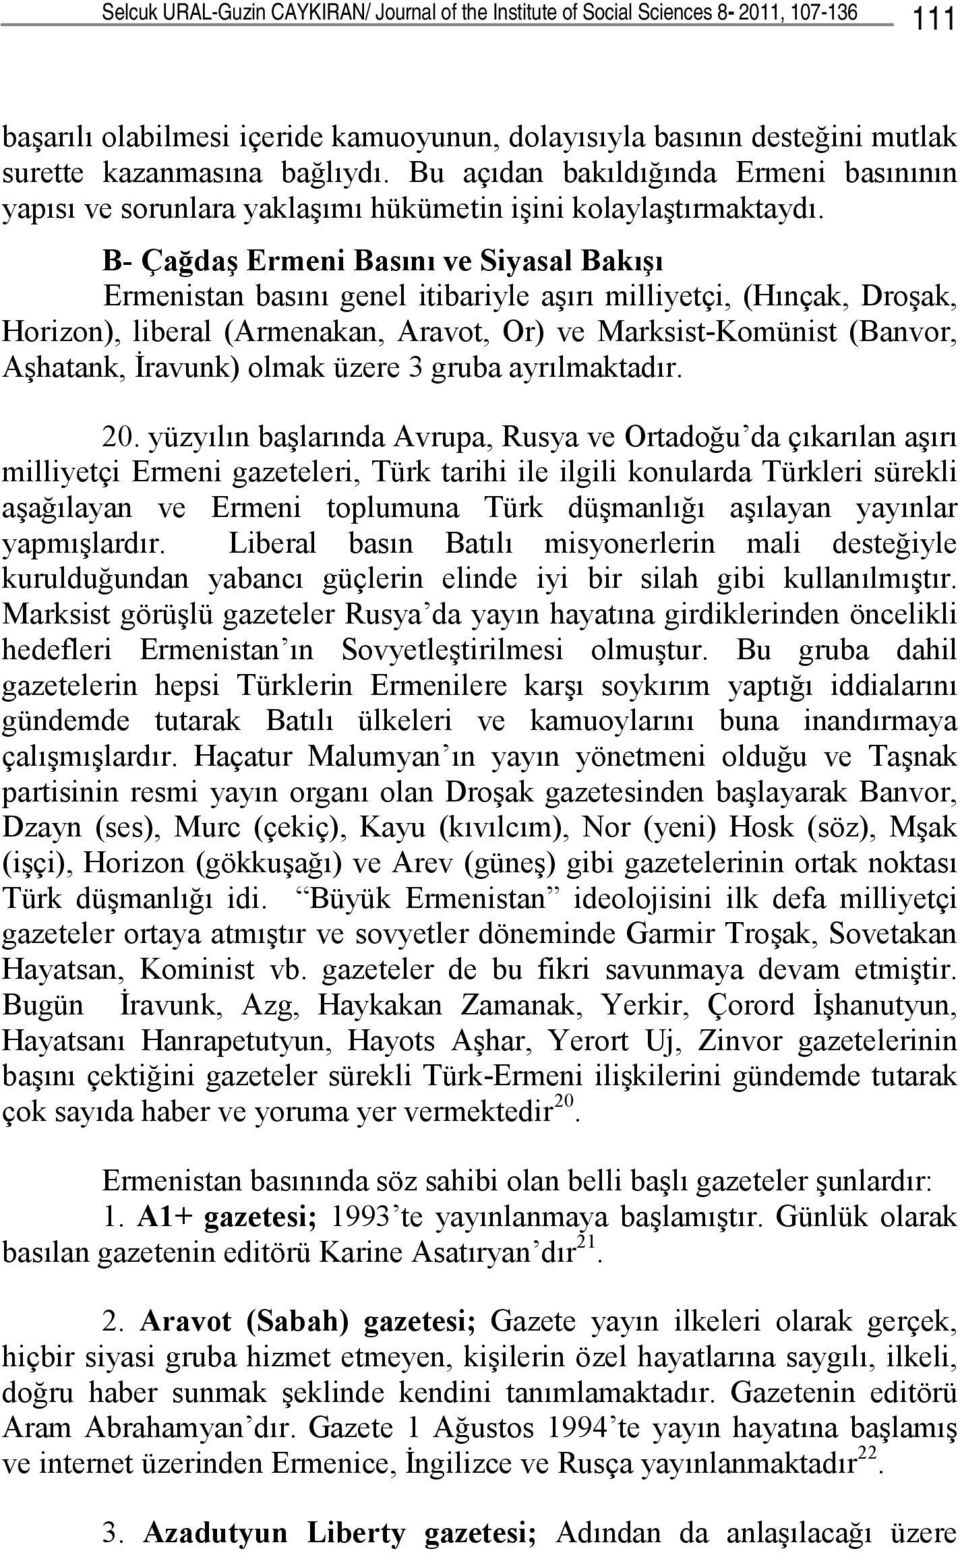 B- Çağdaş Ermeni Basını ve Siyasal Bakışı Ermenistan basını genel itibariyle aşırı milliyetçi, (Hınçak, Droşak, Horizon), liberal (Armenakan, Aravot, Or) ve Marksist-Komünist (Banvor, Aşhatank,